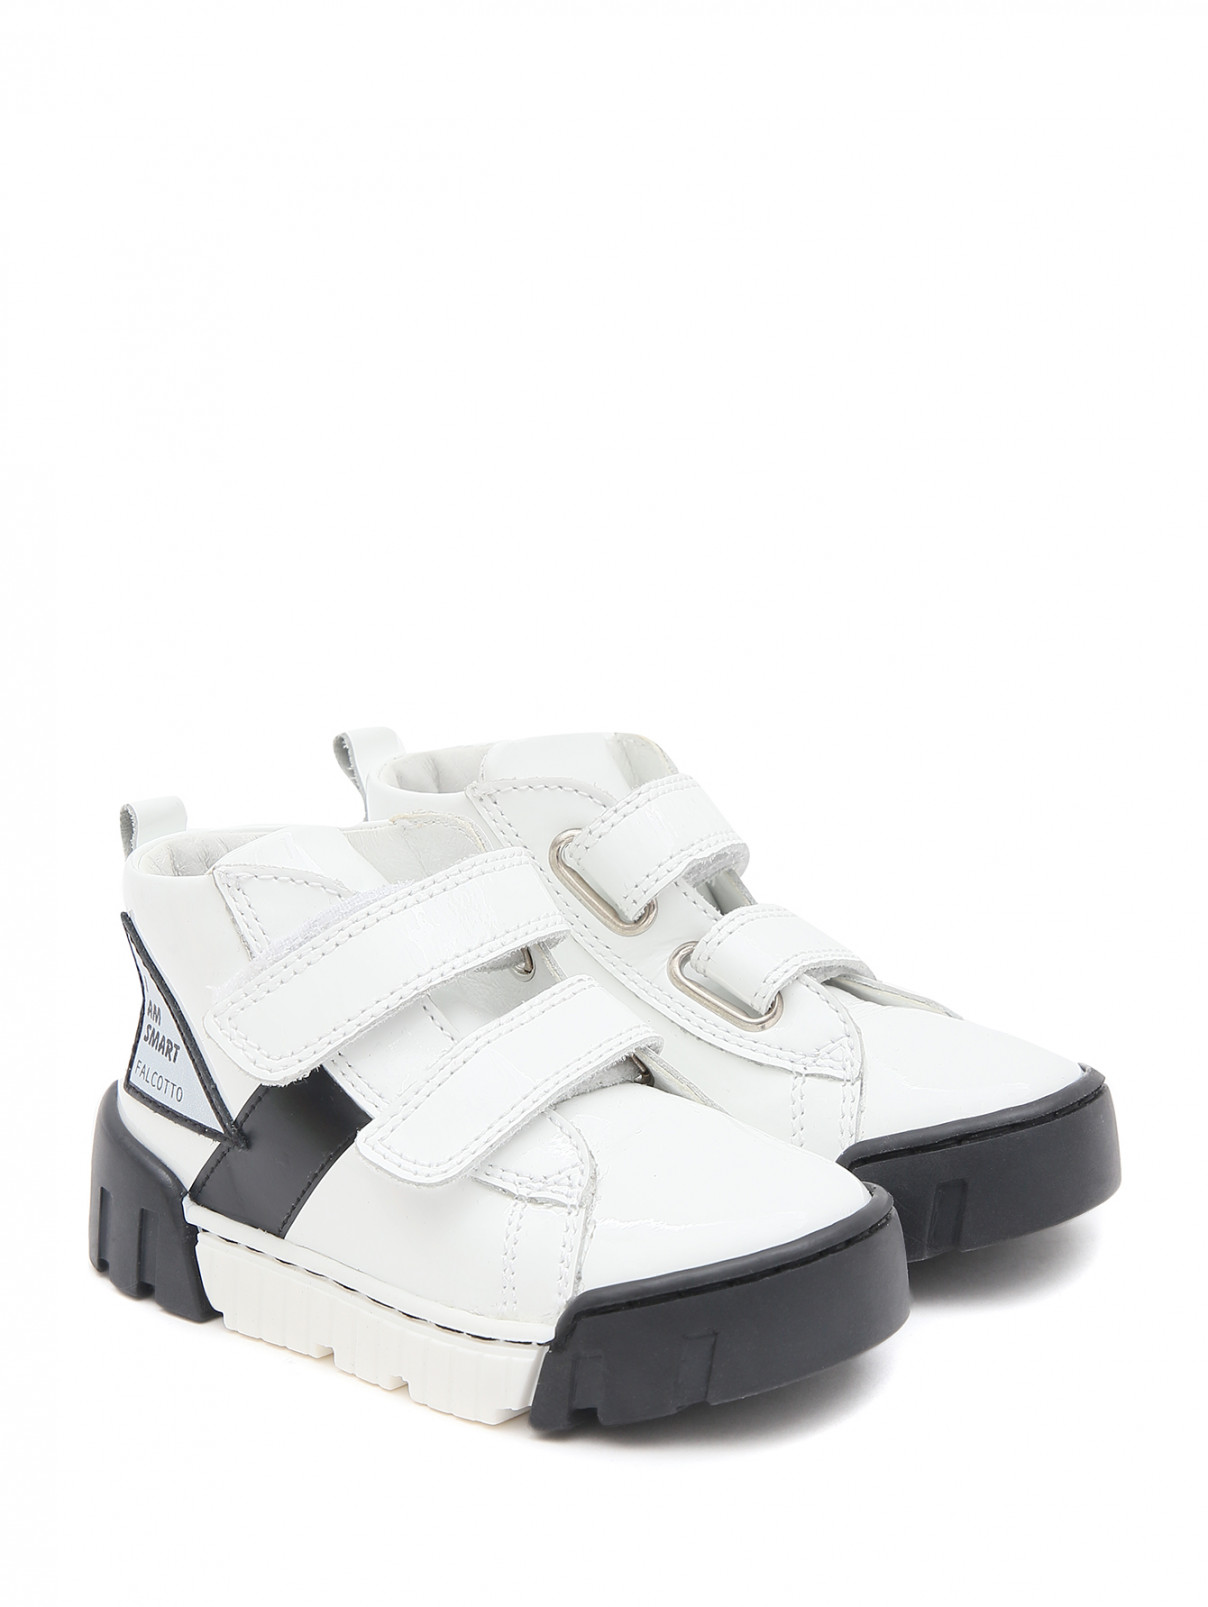 Лаковые ботинки на липучках FALCOTTO  –  Общий вид  – Цвет:  Белый